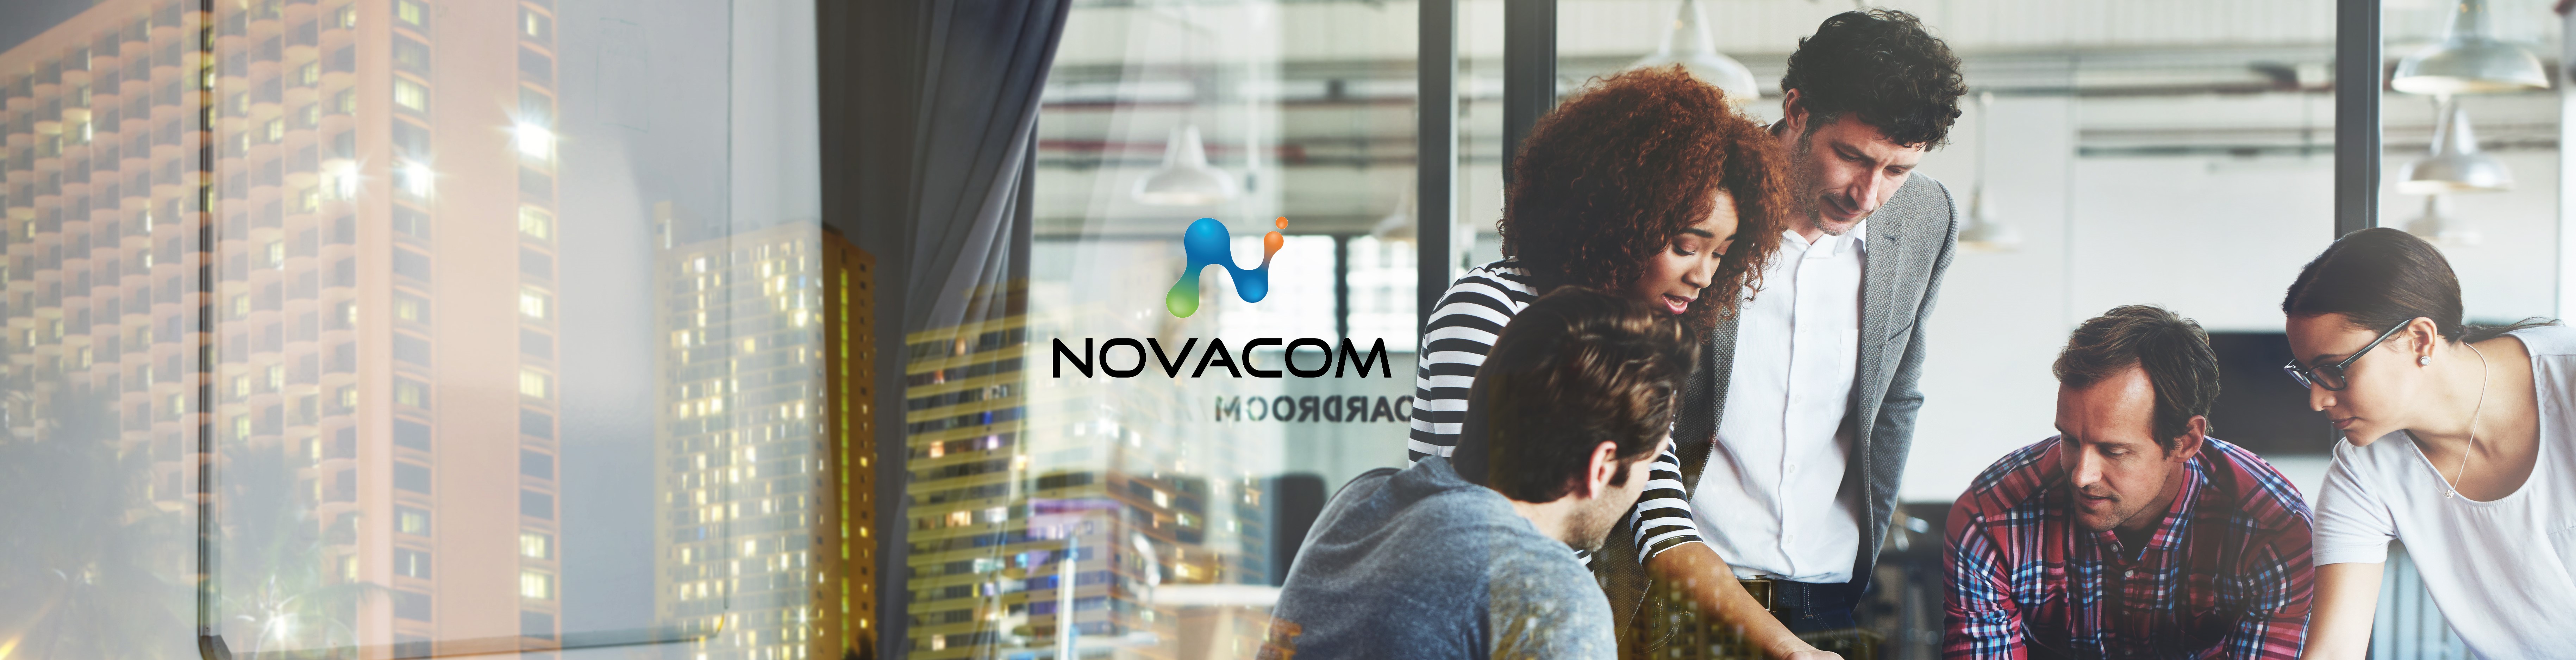 Product Manager | Novacom